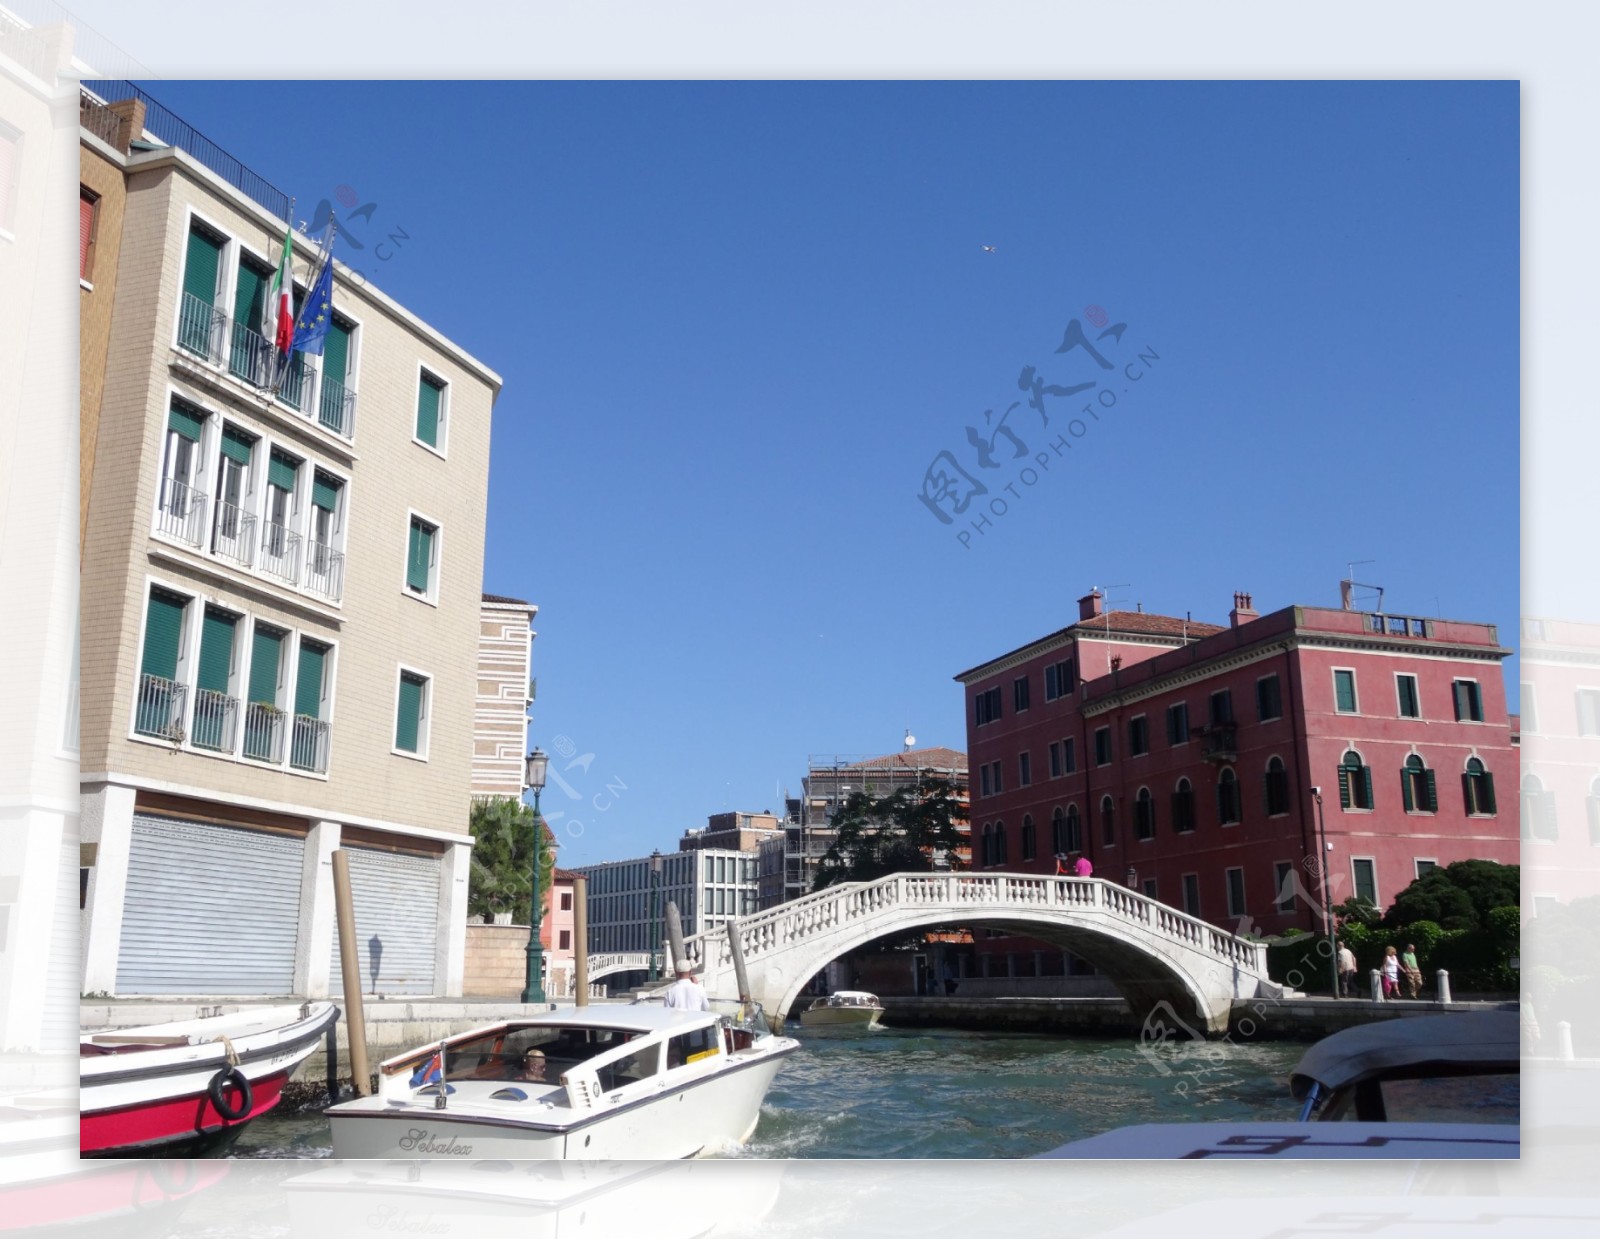 威尼斯的桥图片